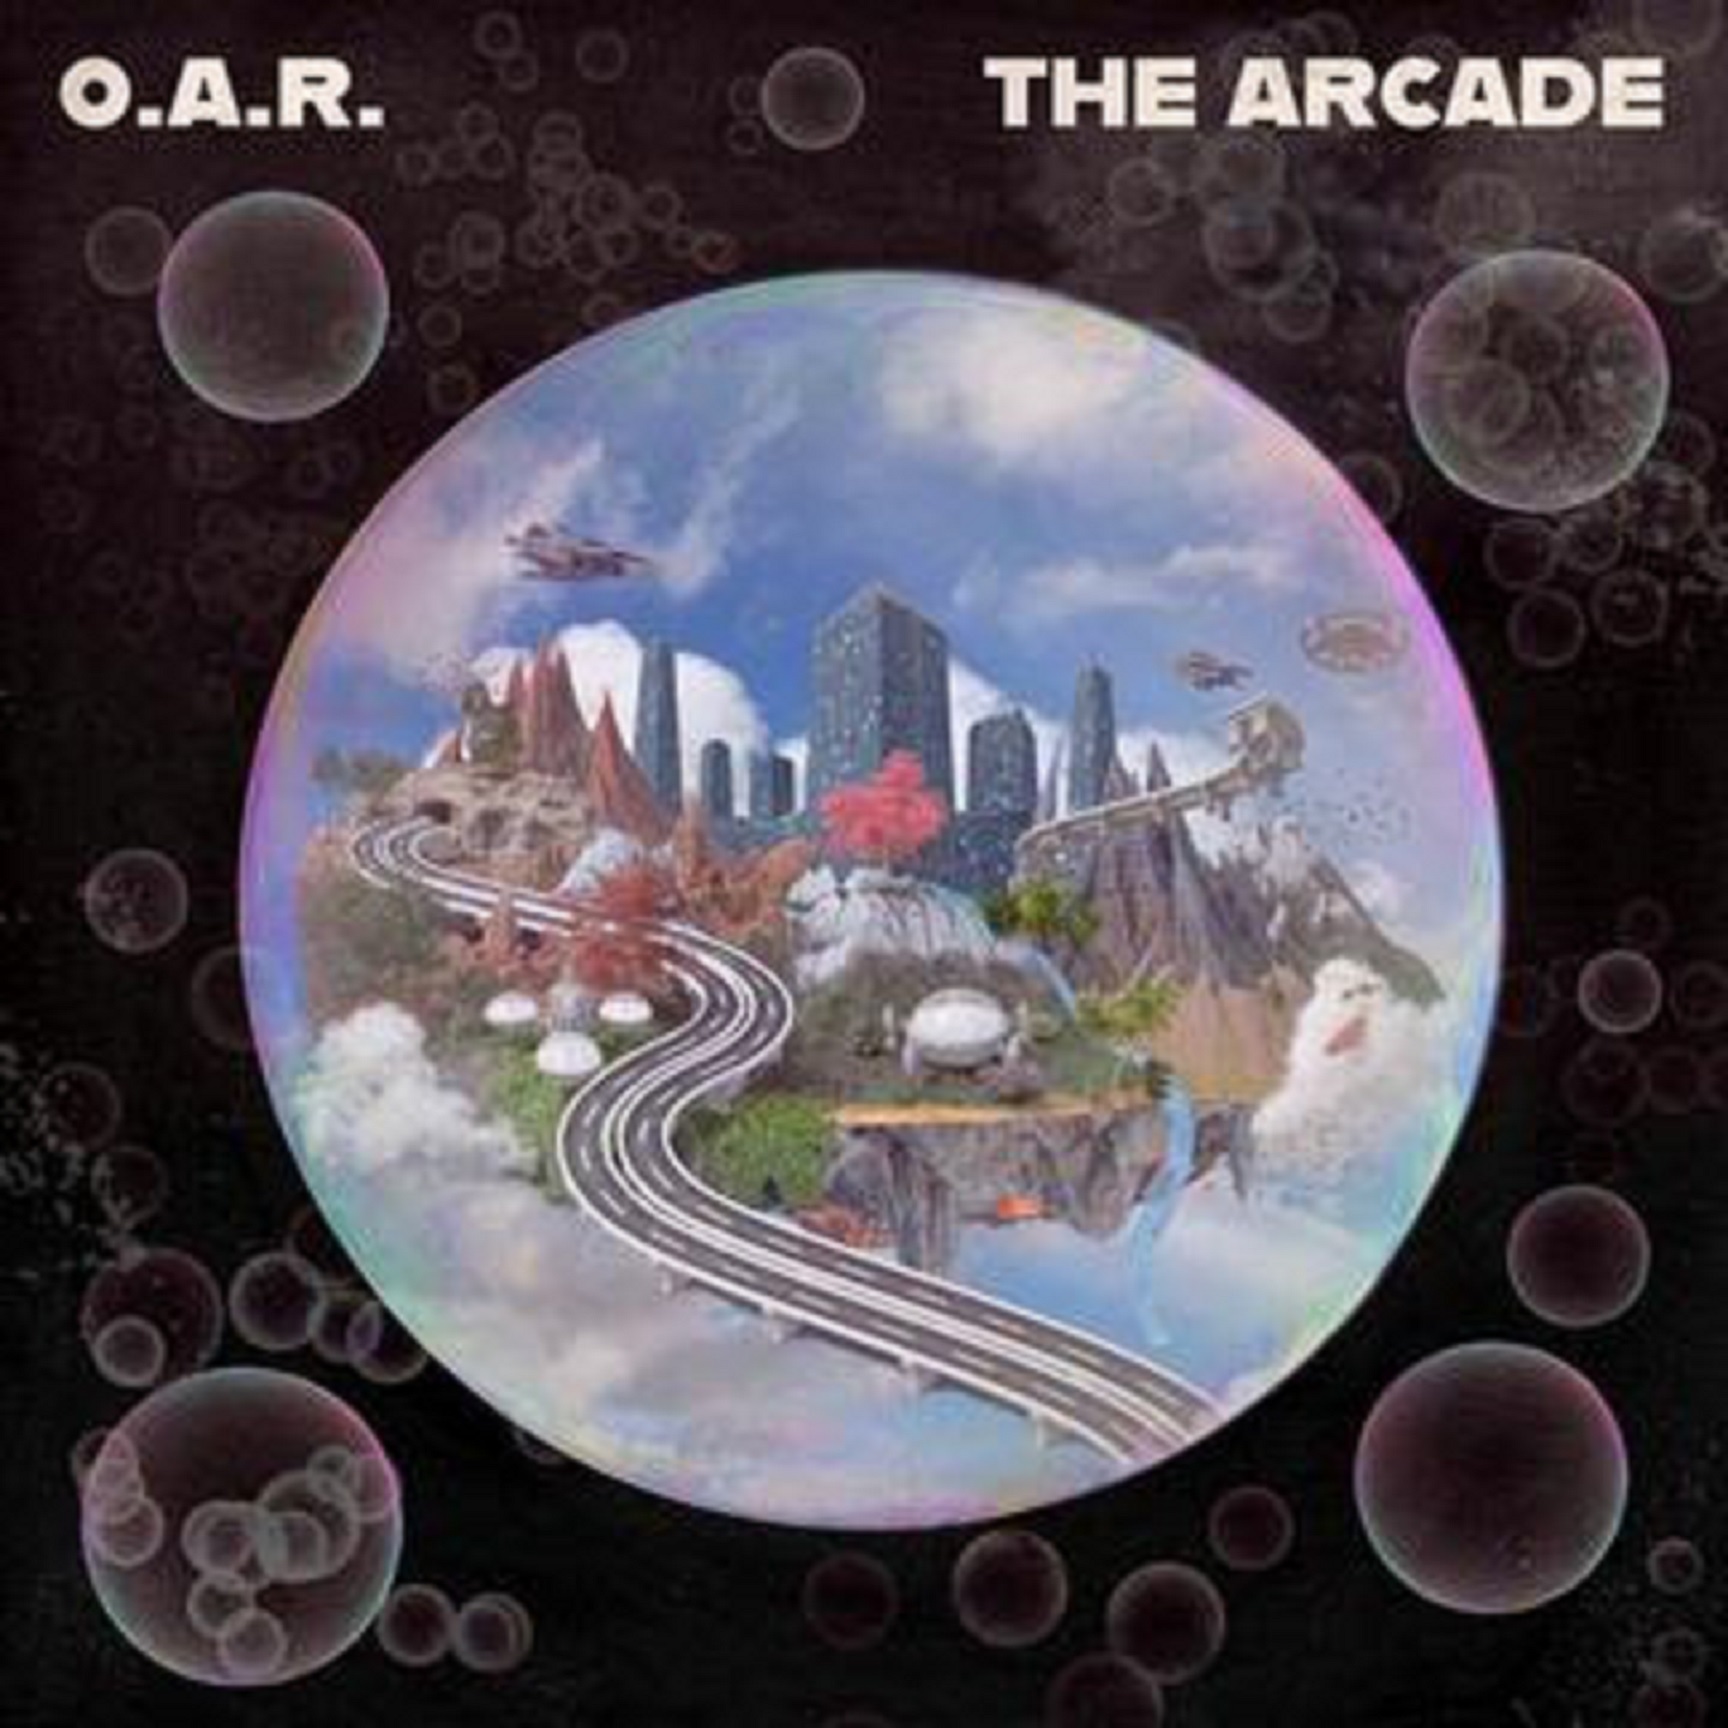 O.A.R. Releases New Album 'The Arcade'